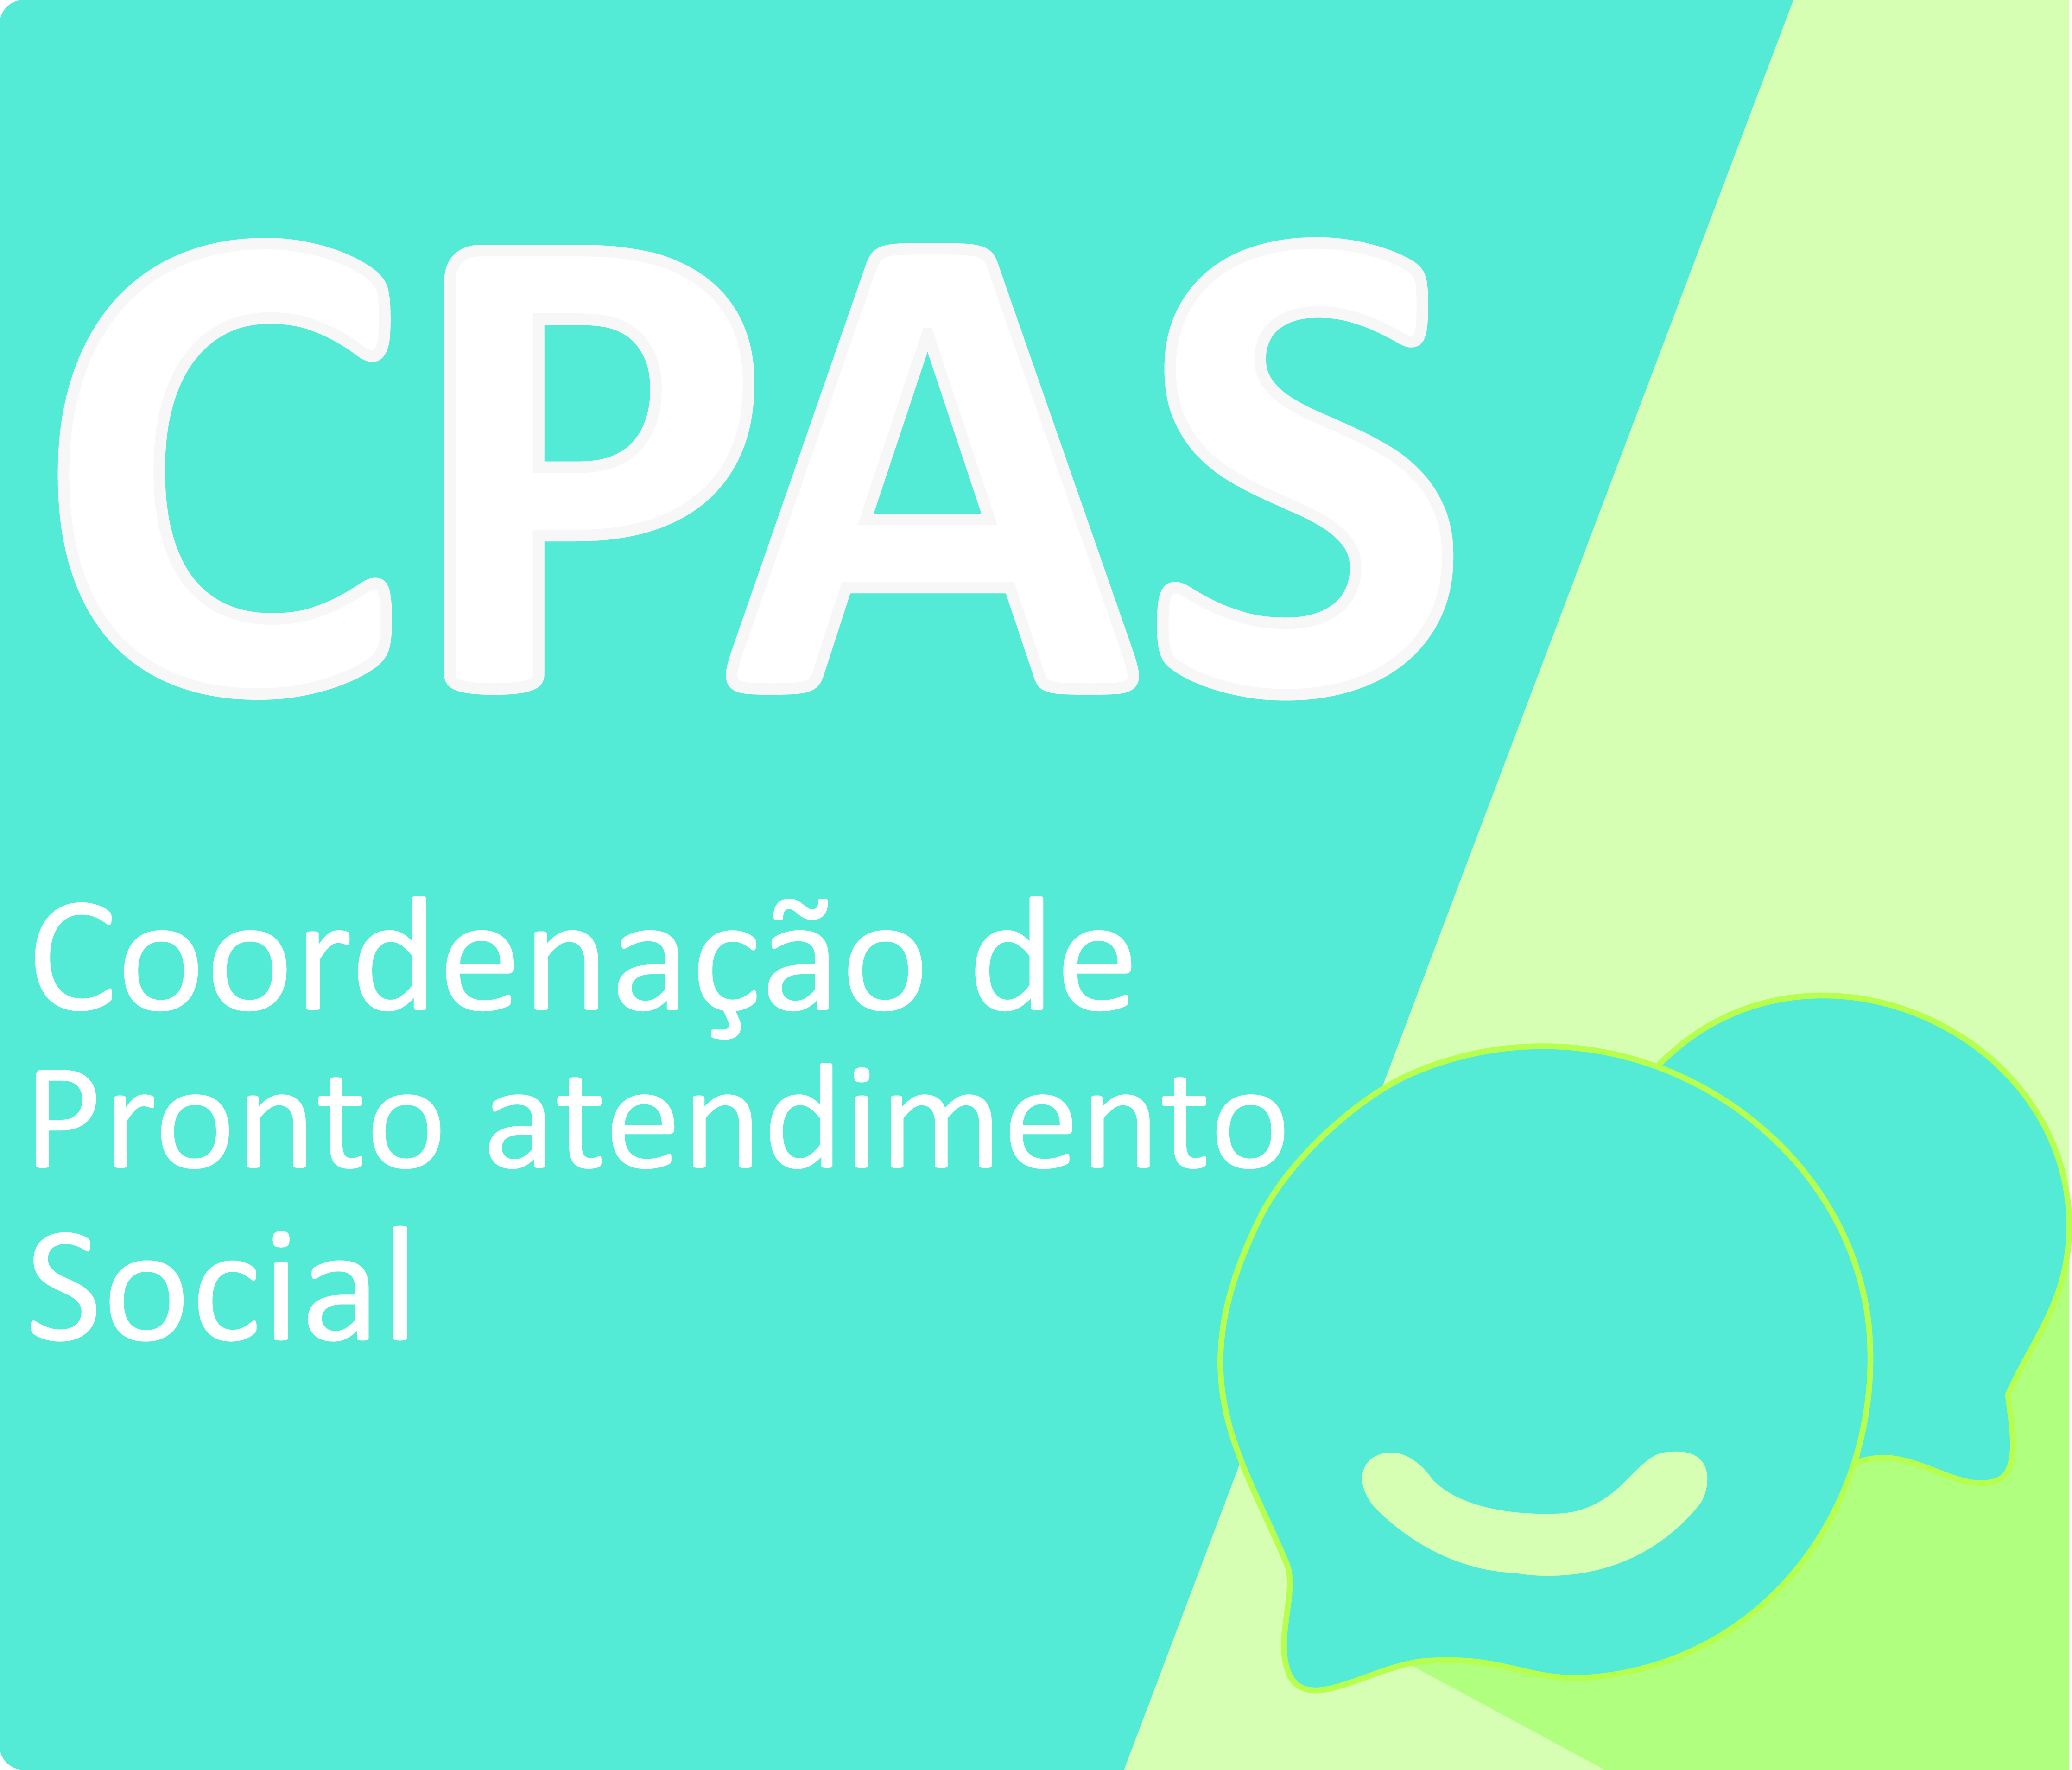 O logo da Coordenação de pronto atendimento social aparece em arte quadrada com parte azul e parte em verde claro. A sigla CPAS aparece em branco em letras grandes, acima do nome por extenso, em letras menores.